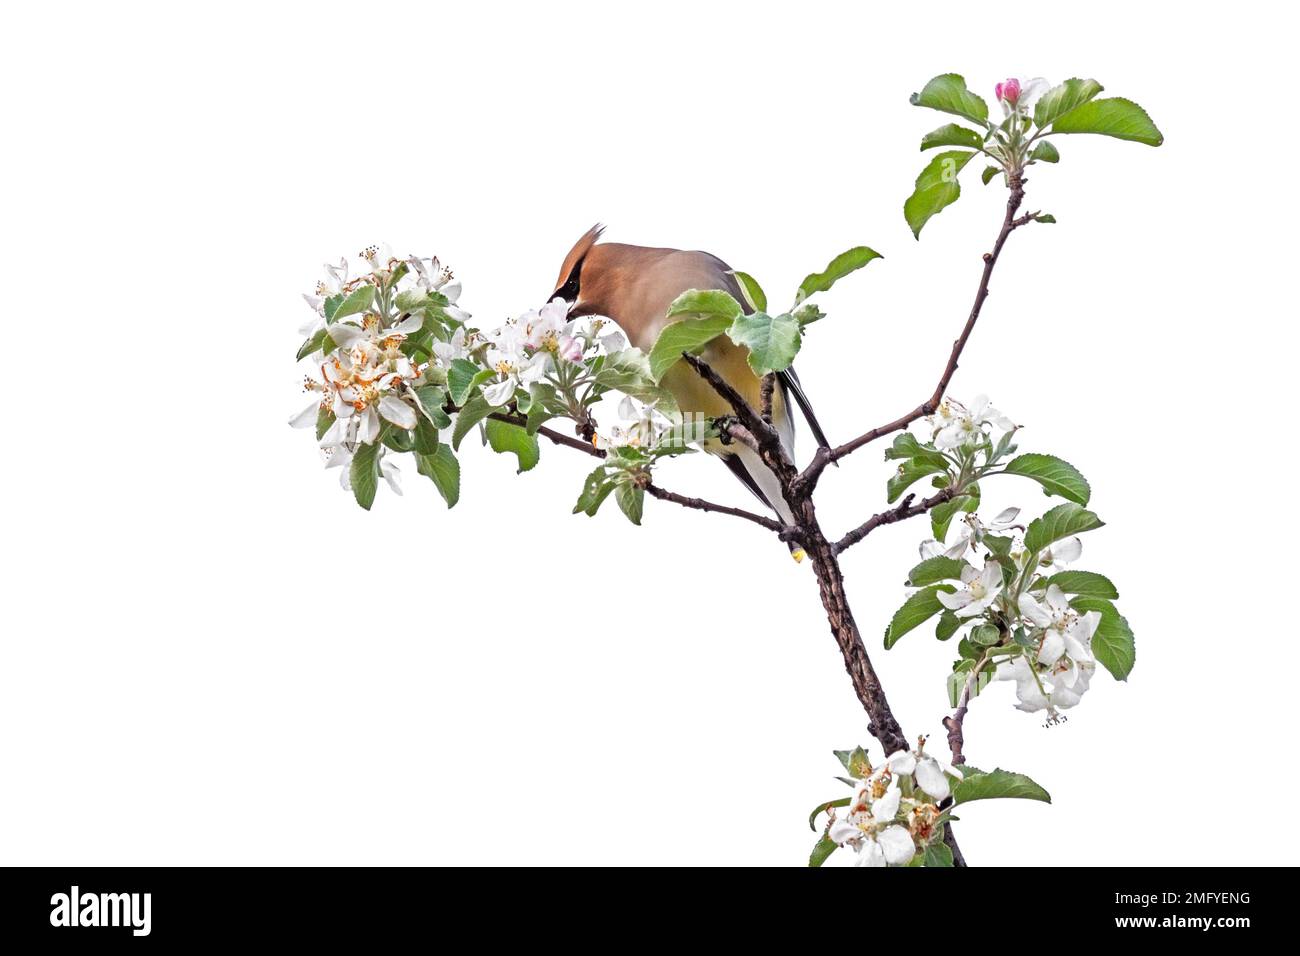 Un waxwing di cedro appollaiato sopra un albero della mela che mangia i relativi fiori, fondo bianco Foto Stock